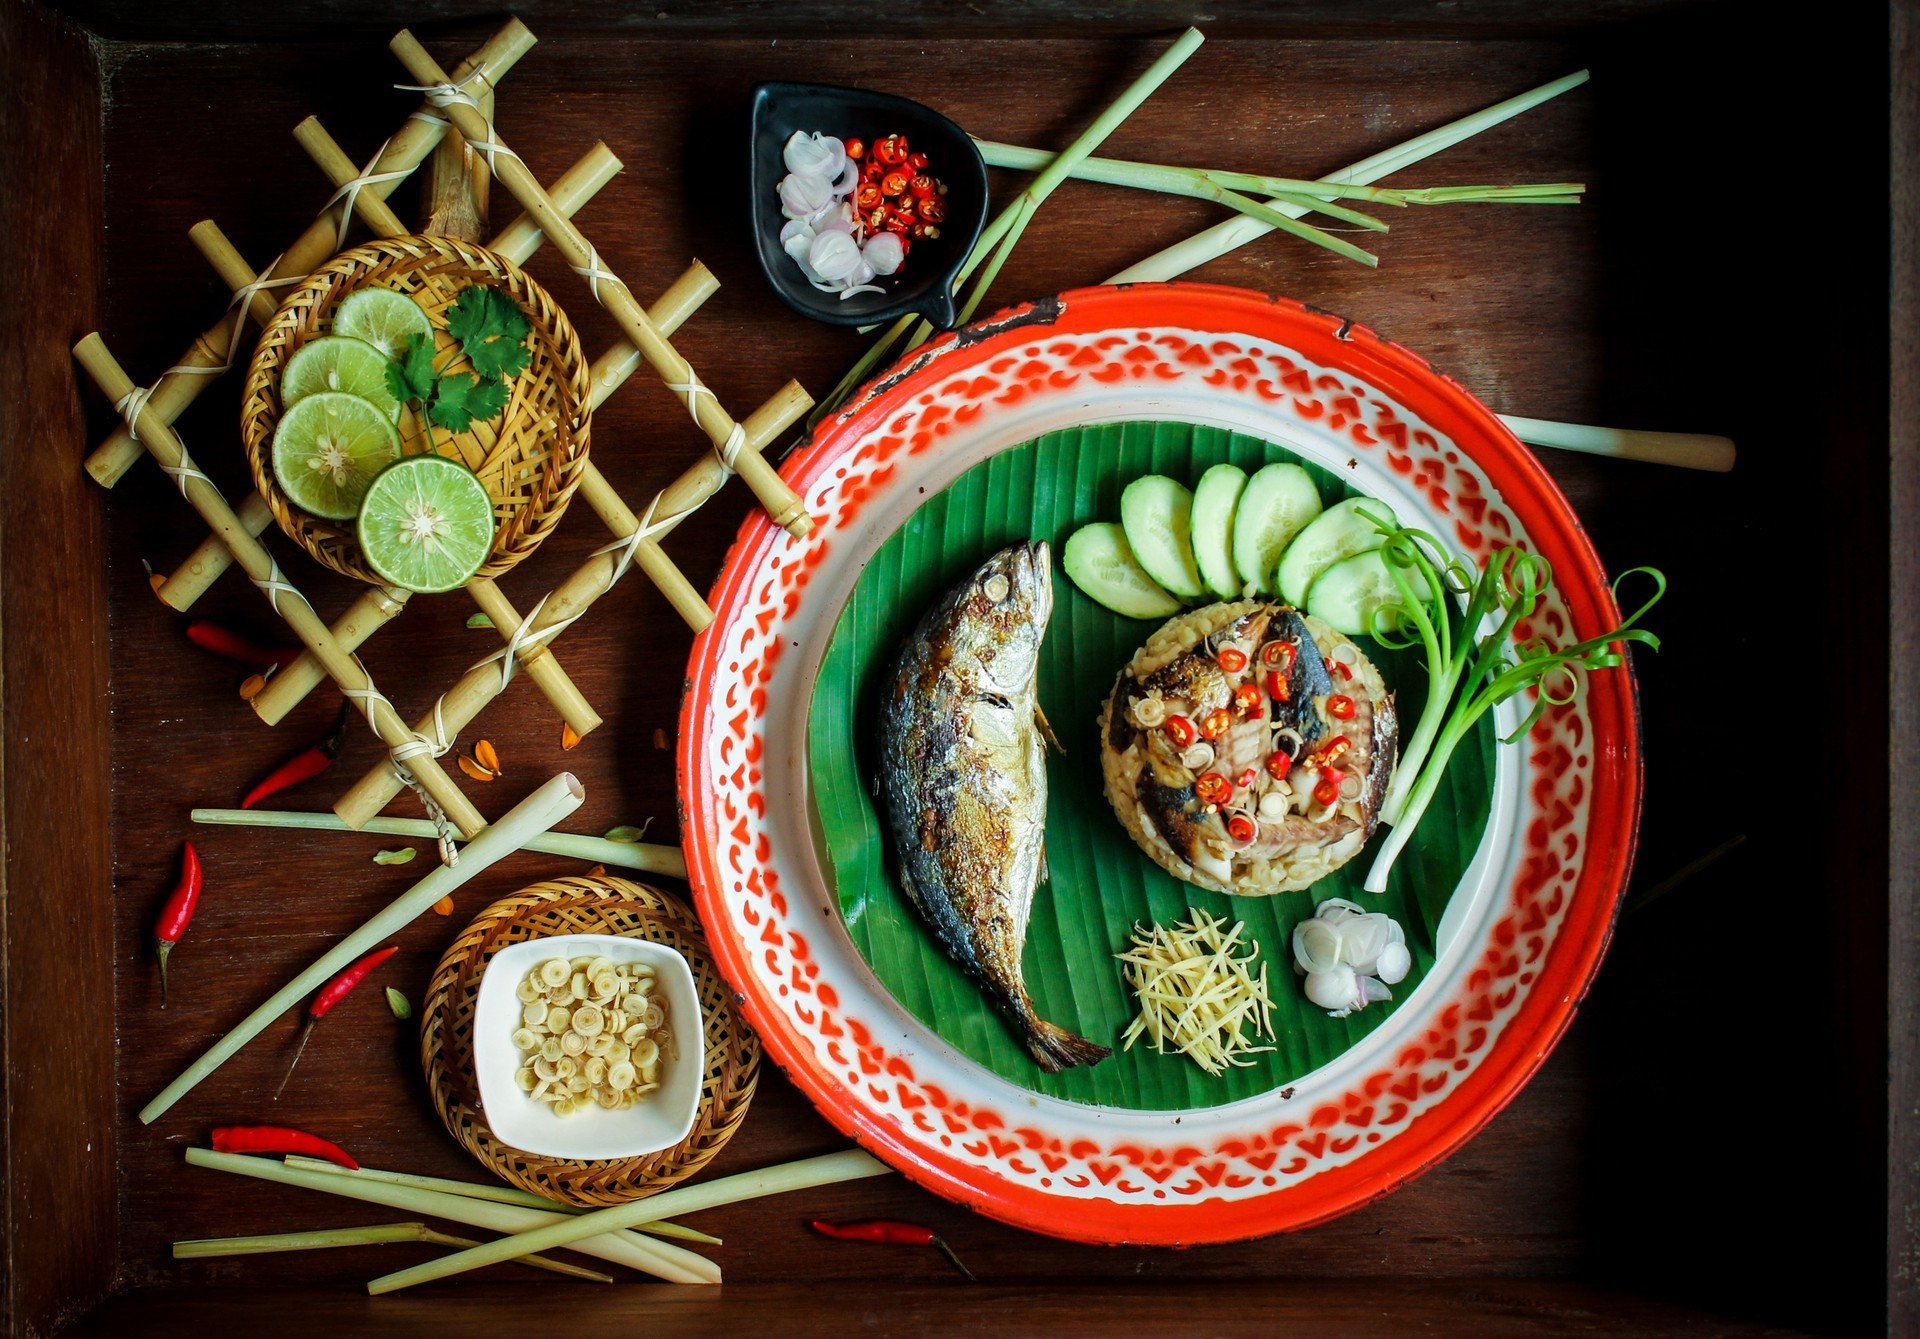 วิธีทำ “ข้าวคลุกปลาทูสมุนไพร” เมนูอาหารจานเดียวอิ่มอร่อย แถมได้สุขภาพ!